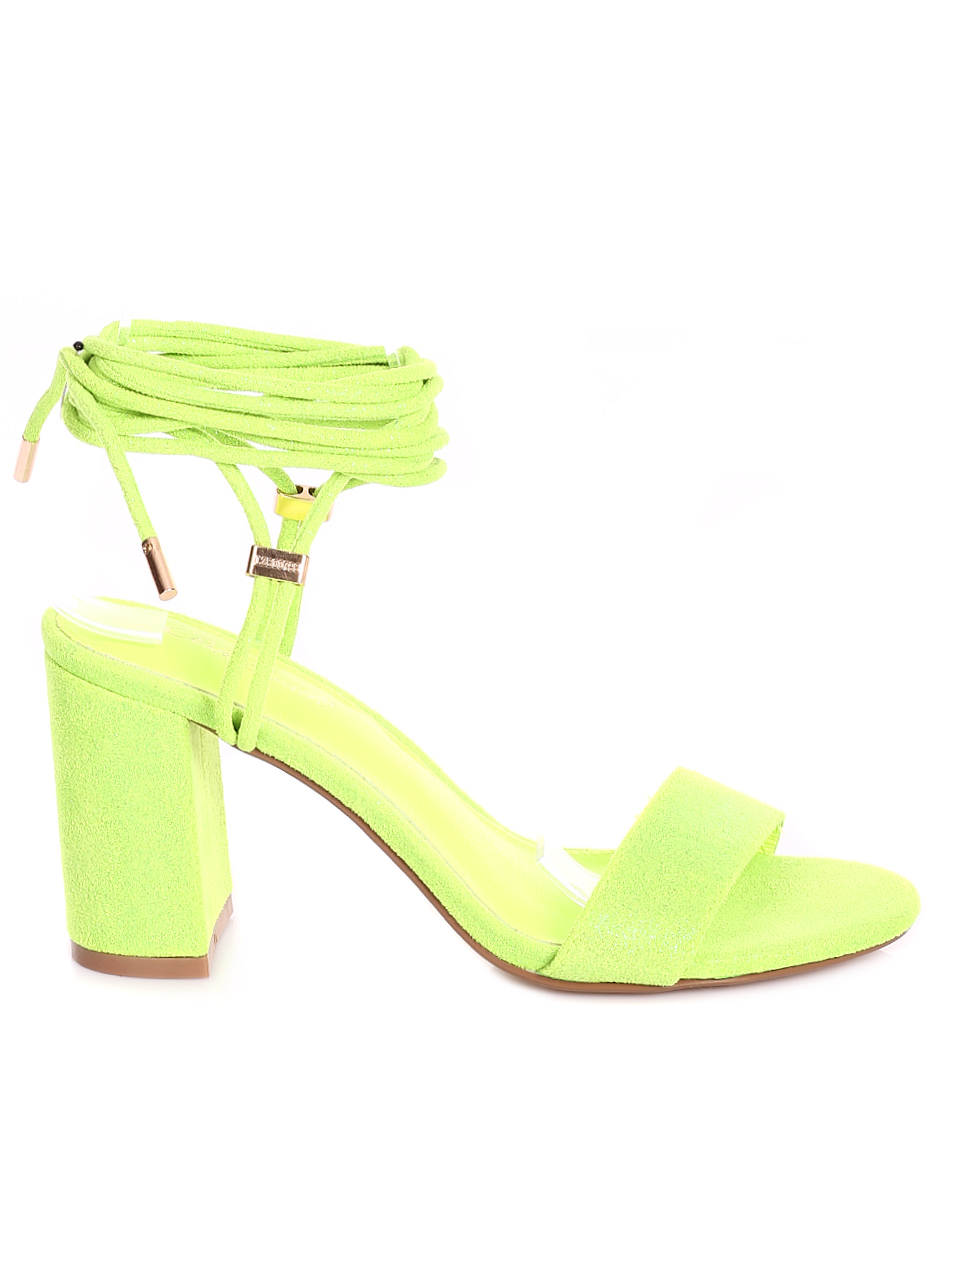 Елегантни дамски сандали на ток с връзки 4M-20075 green